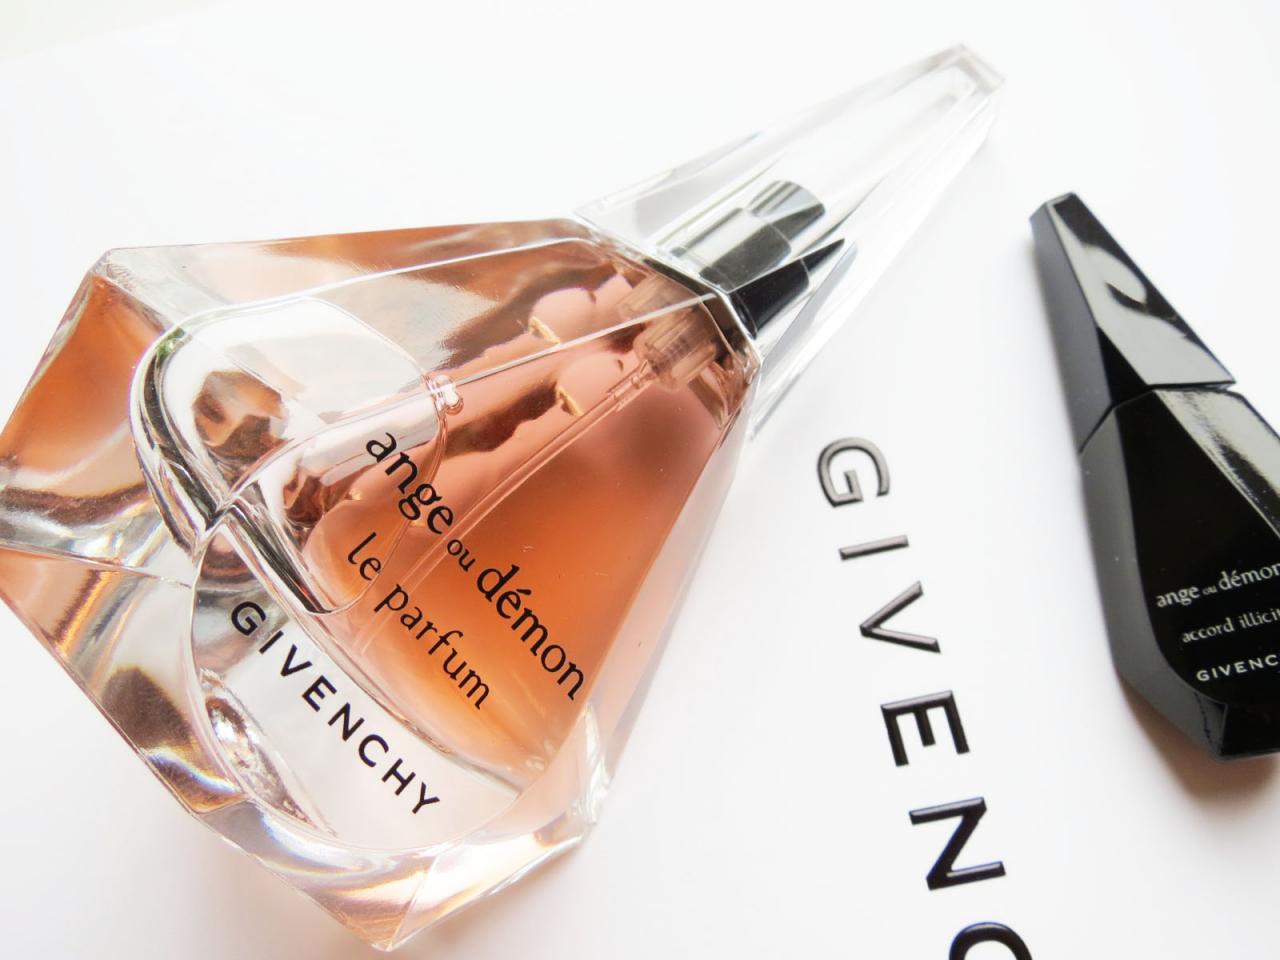 Bộ quà tặng nước hoa Givenchy Le Parfum 40ml & Son Accord Llicite 4ml